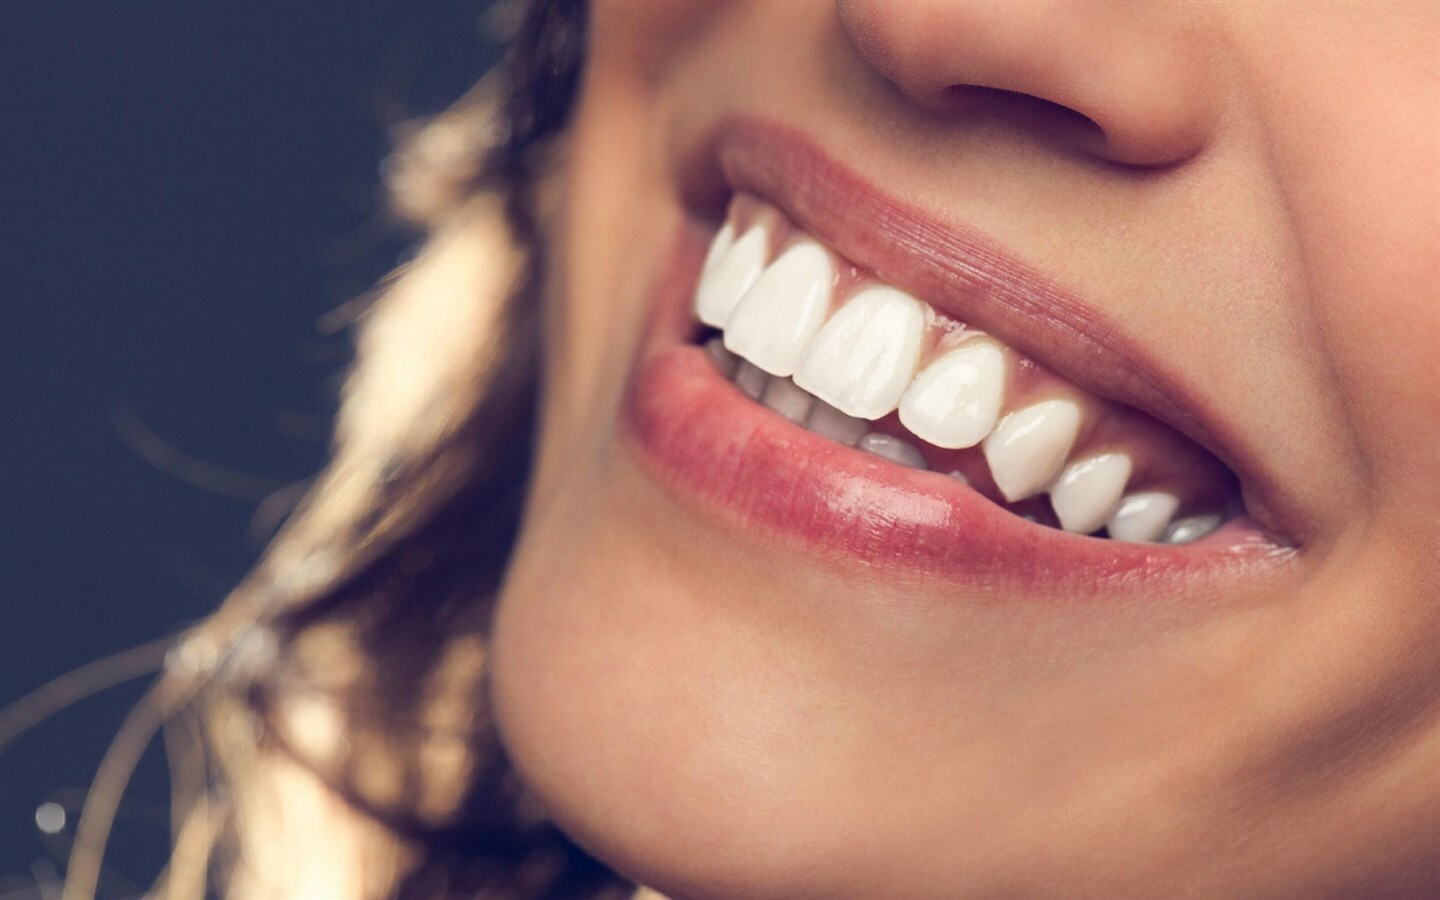 фото красивых женских зубов